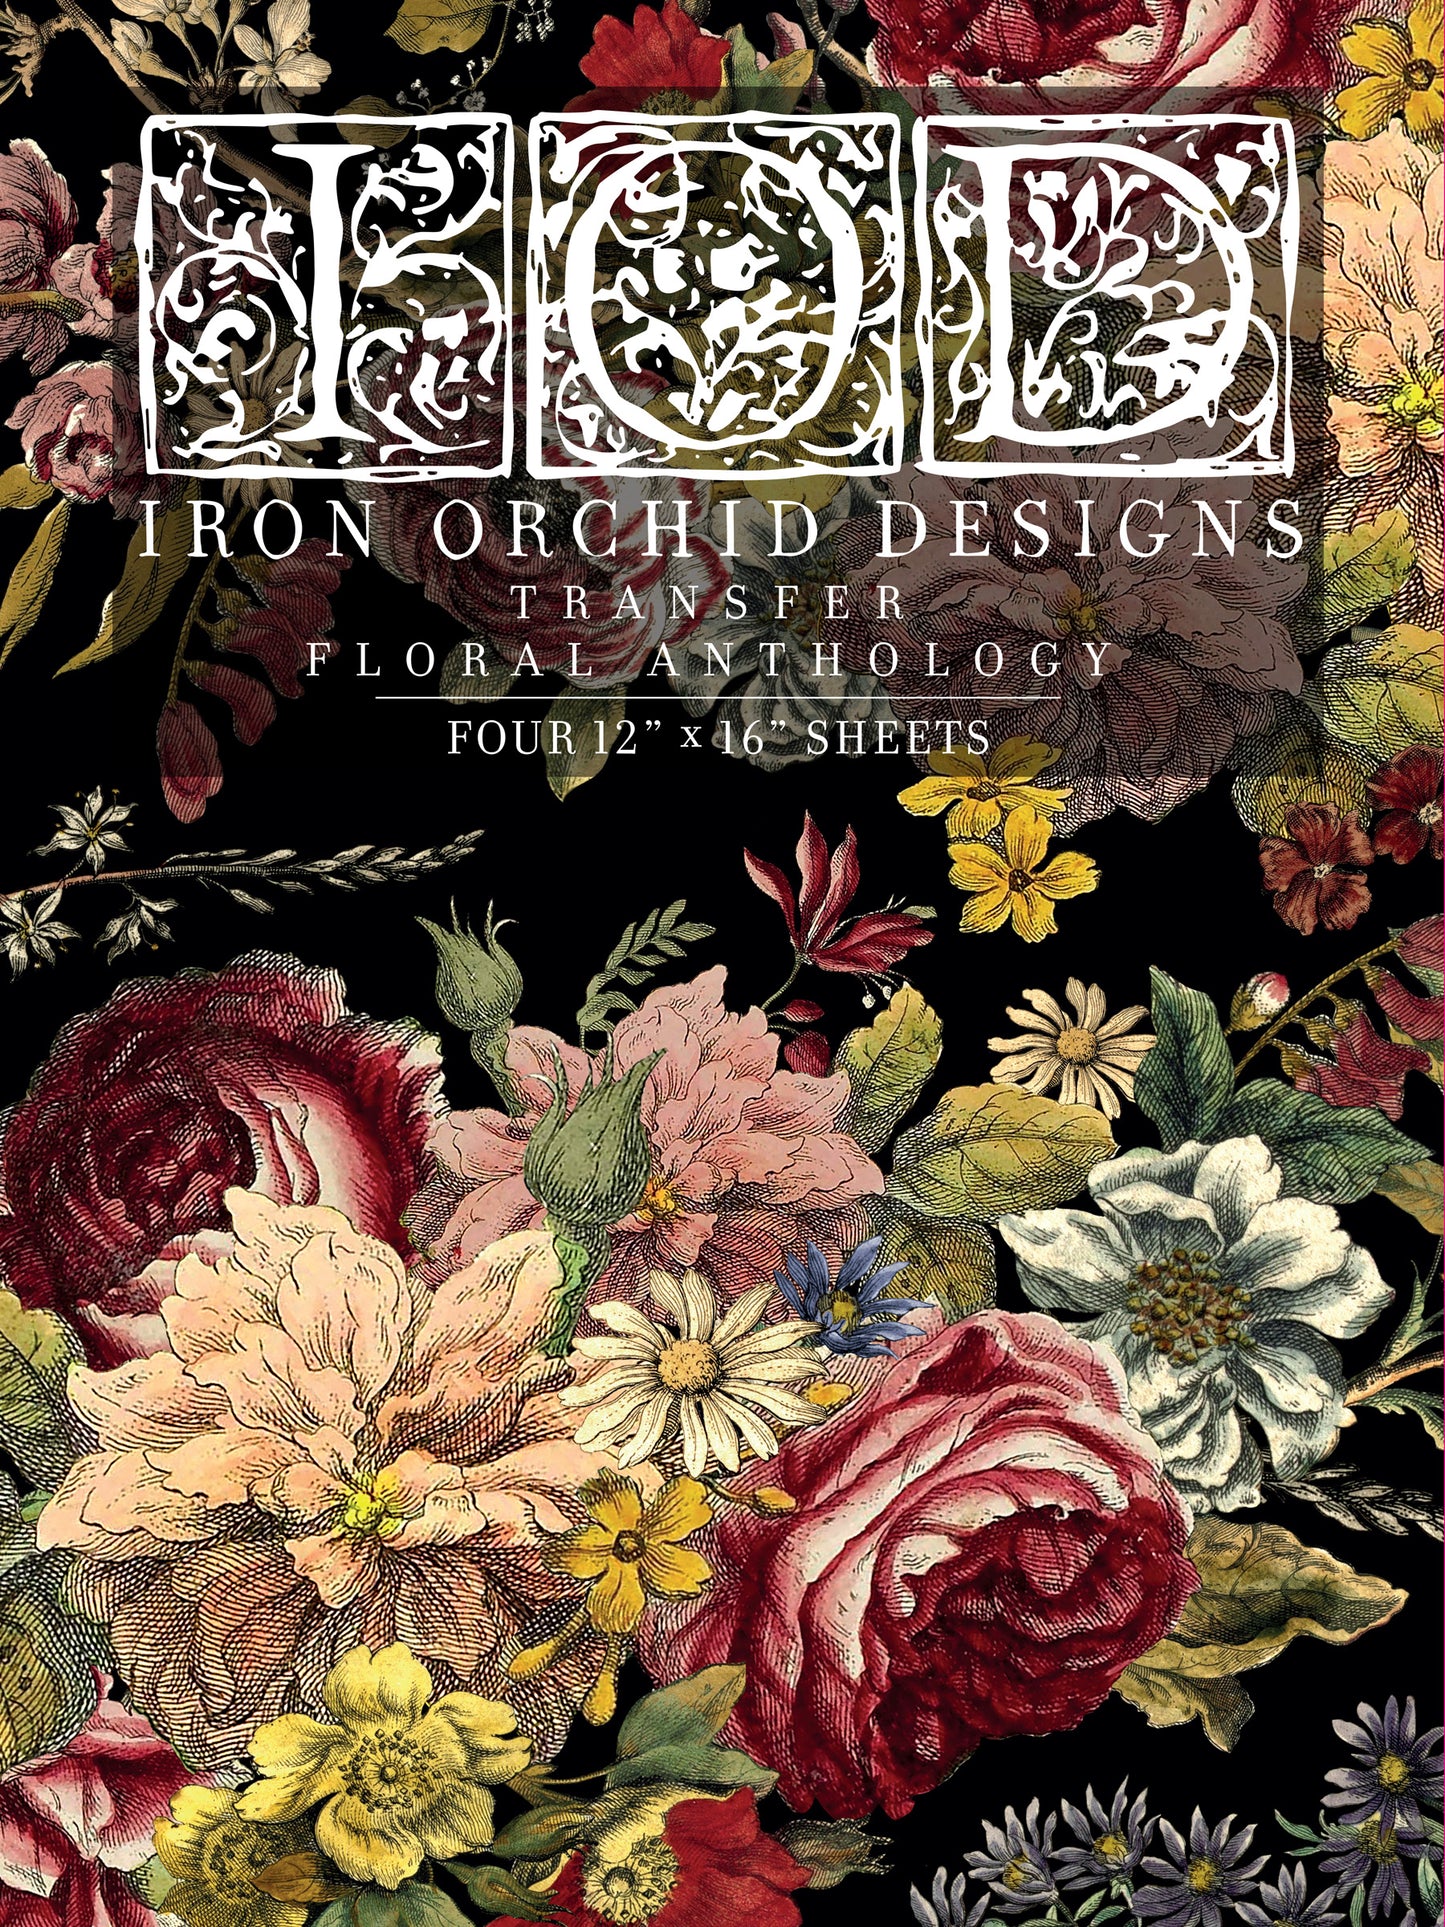 Floral Anthology - IOD Transfer